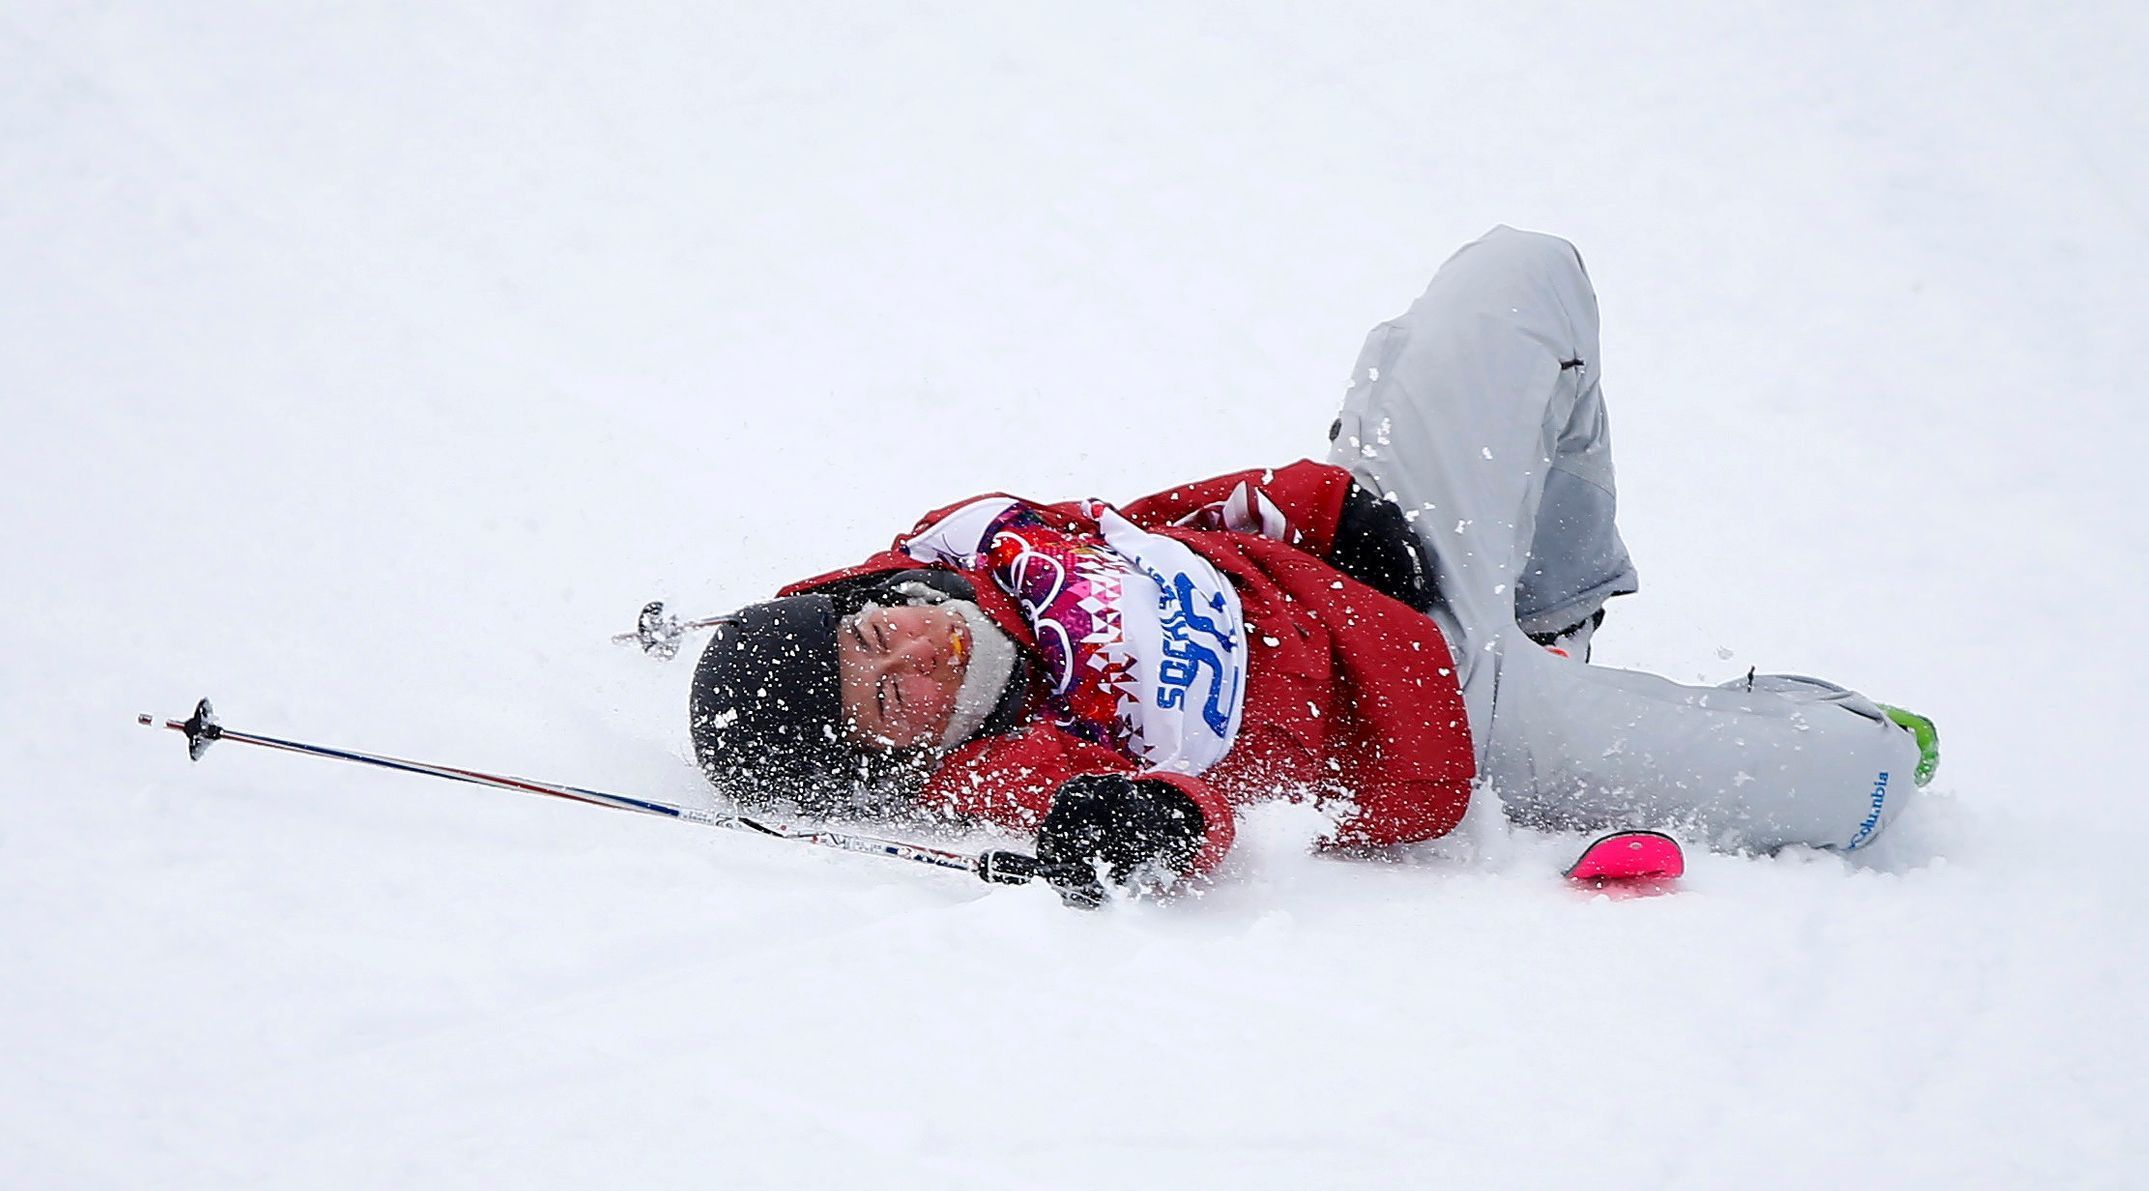 Kanaďanka Yuki Tsubotaová na OH v Soči 2014 (slopestyle)